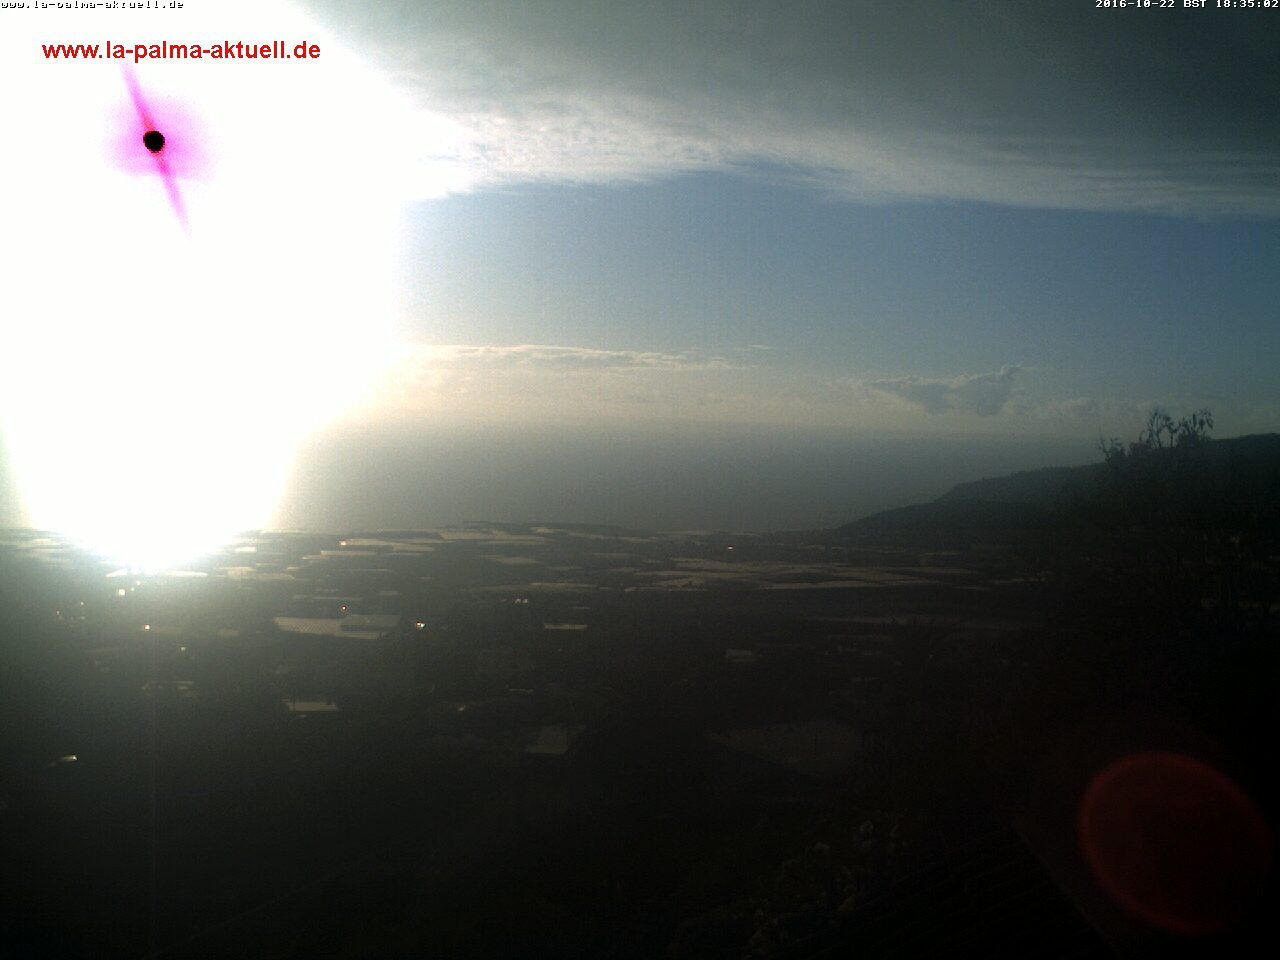 Webcam in El Paso over het Aridane dal op La Palma.